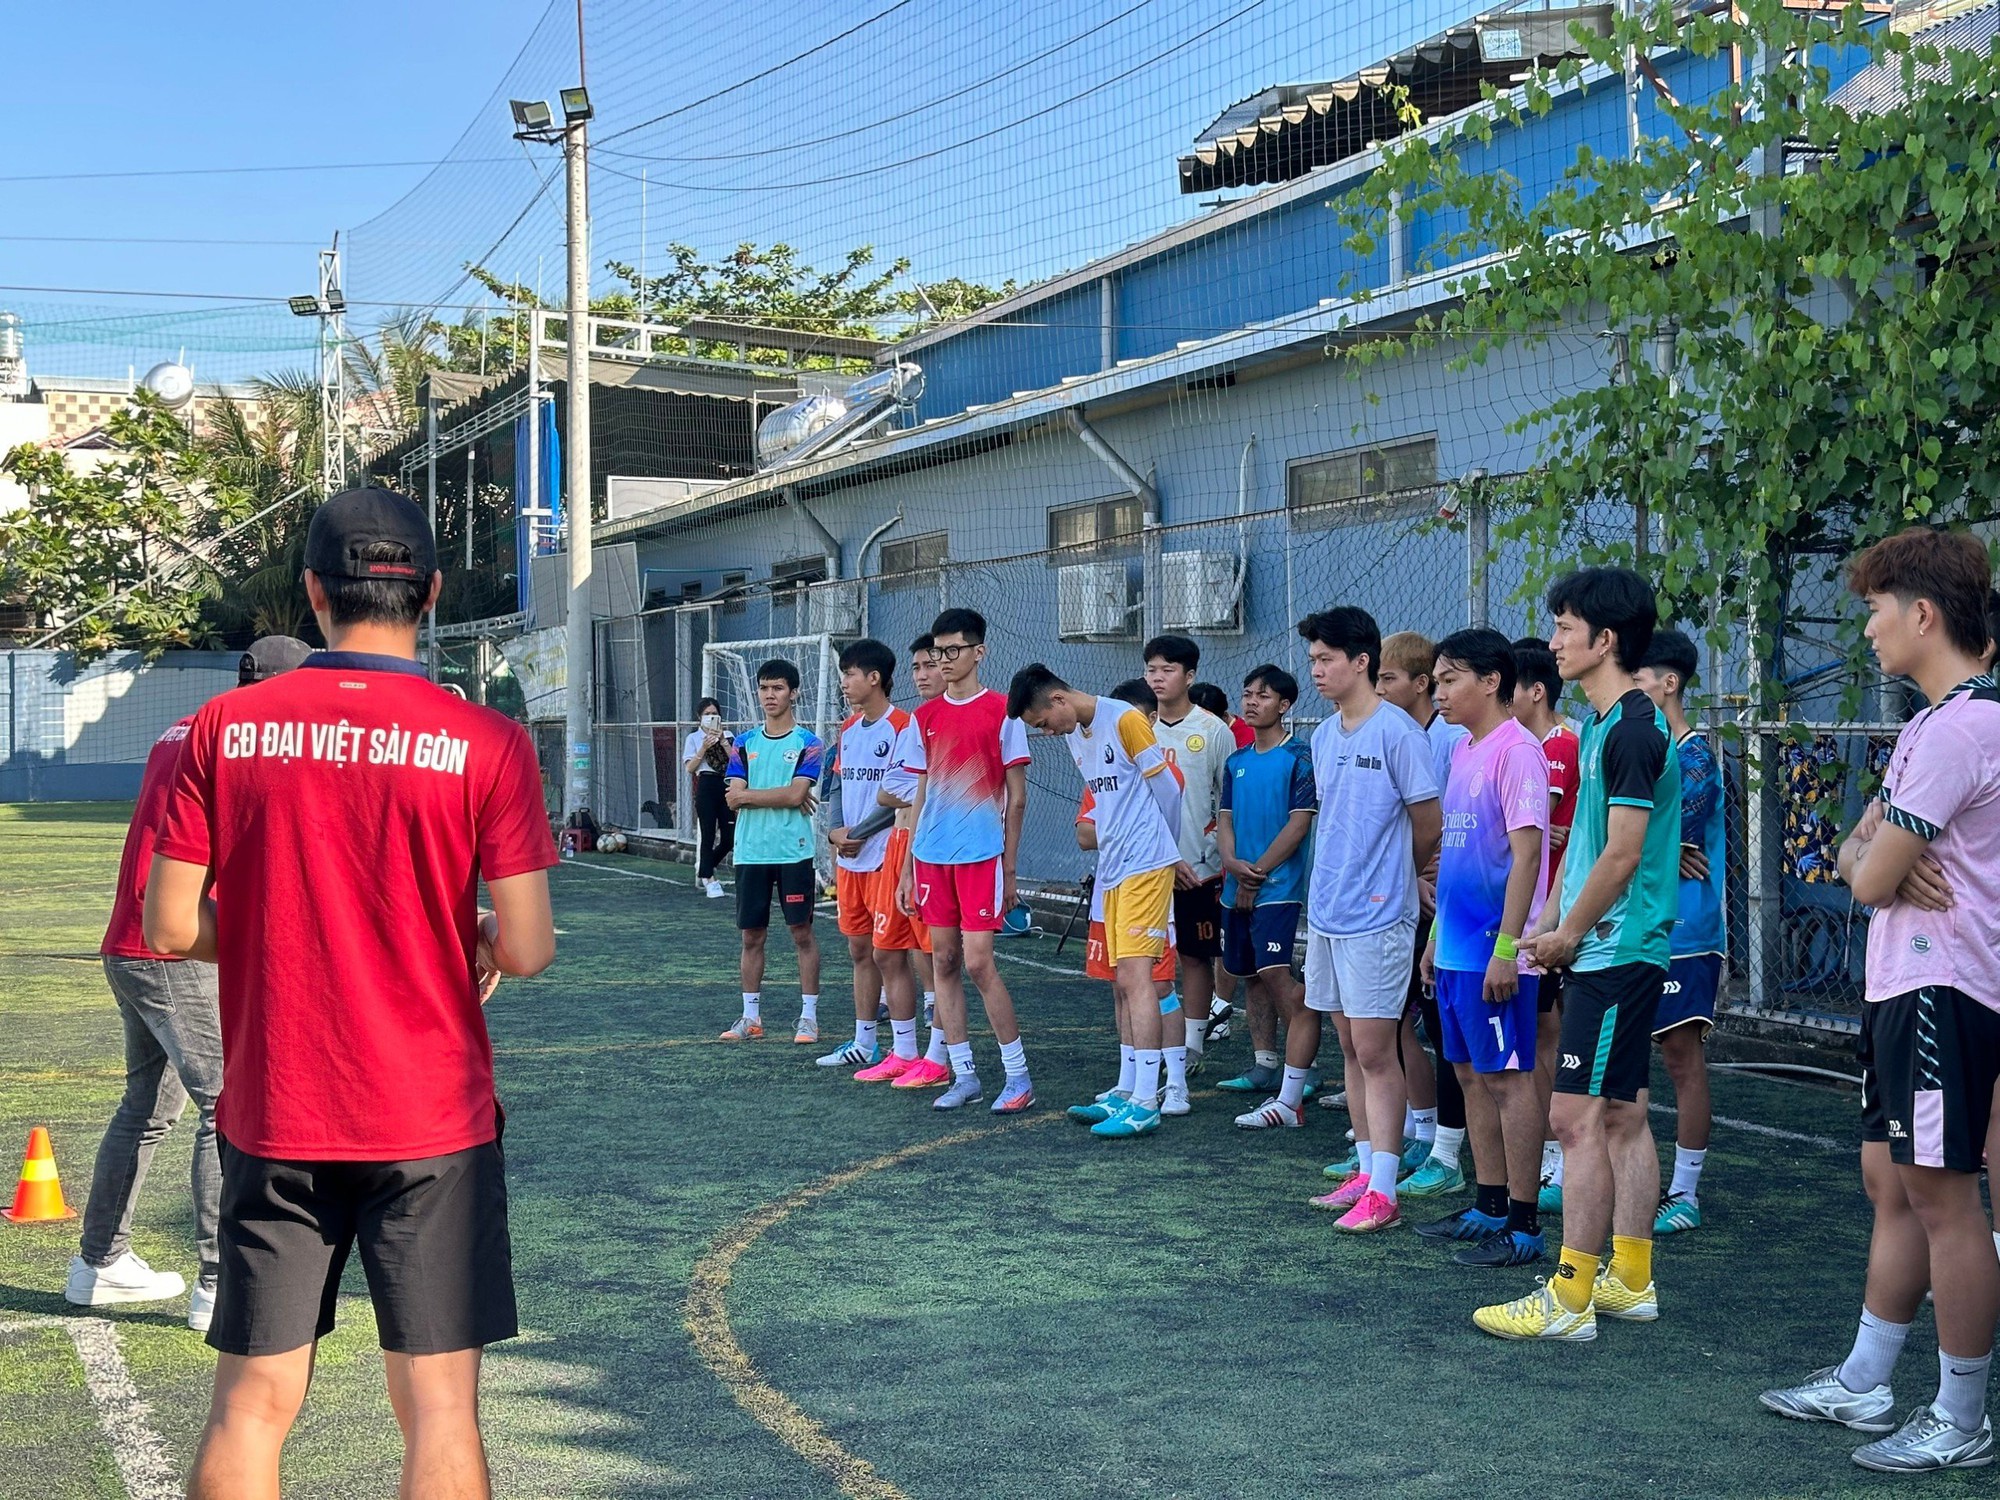 Sức nóng giải đấu sinh viên đến từ trường Cao đẳng Đại Việt Sài Gòn - Ảnh 7.